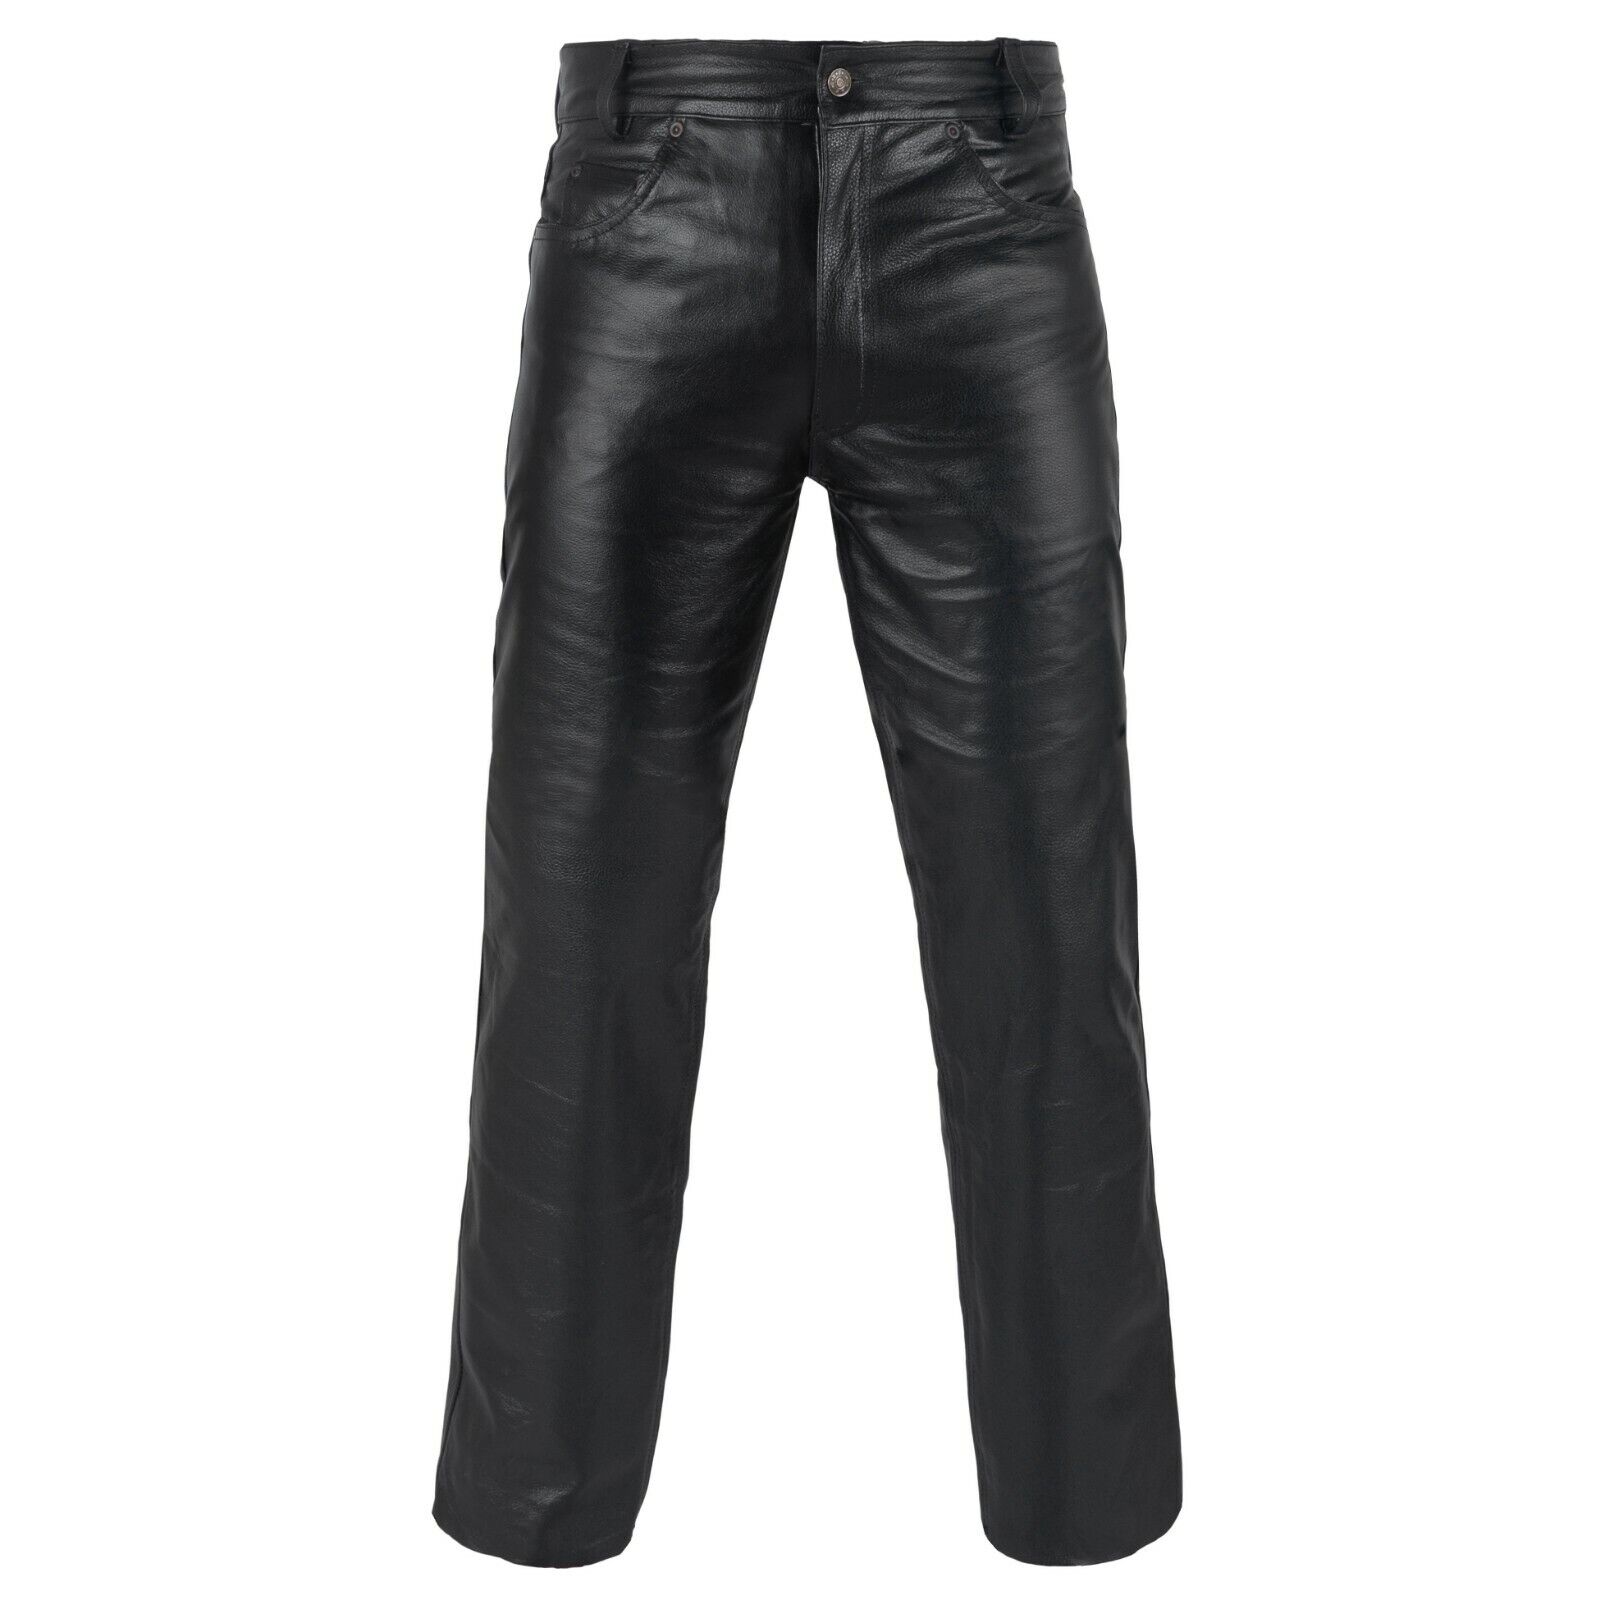 DEFY Men's 100% Genuine Cow Skin Full Grain Motorcycle Leather Pant ...